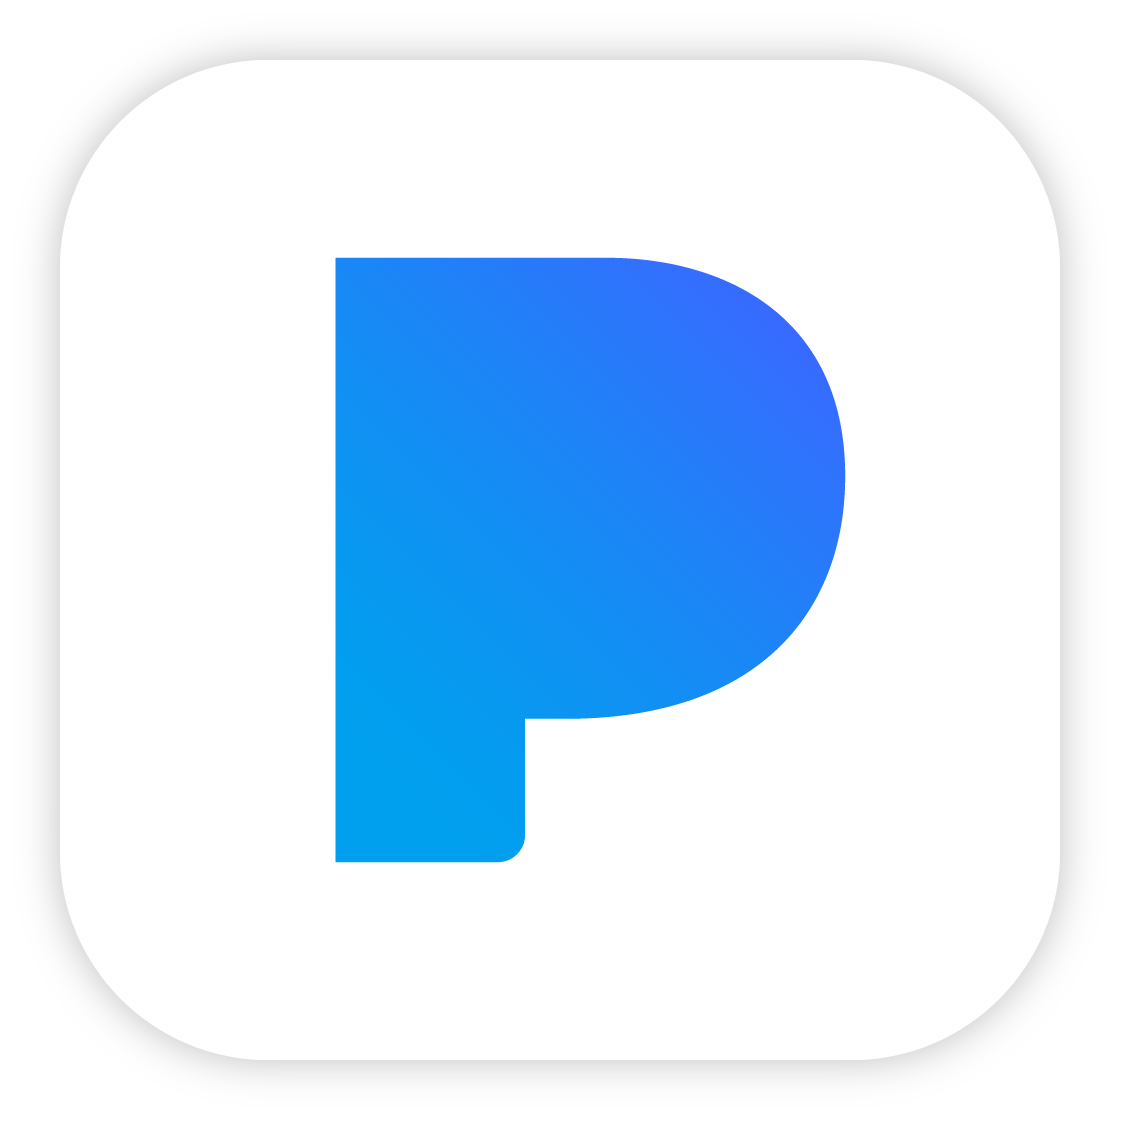 File:Pandora logo blue.png